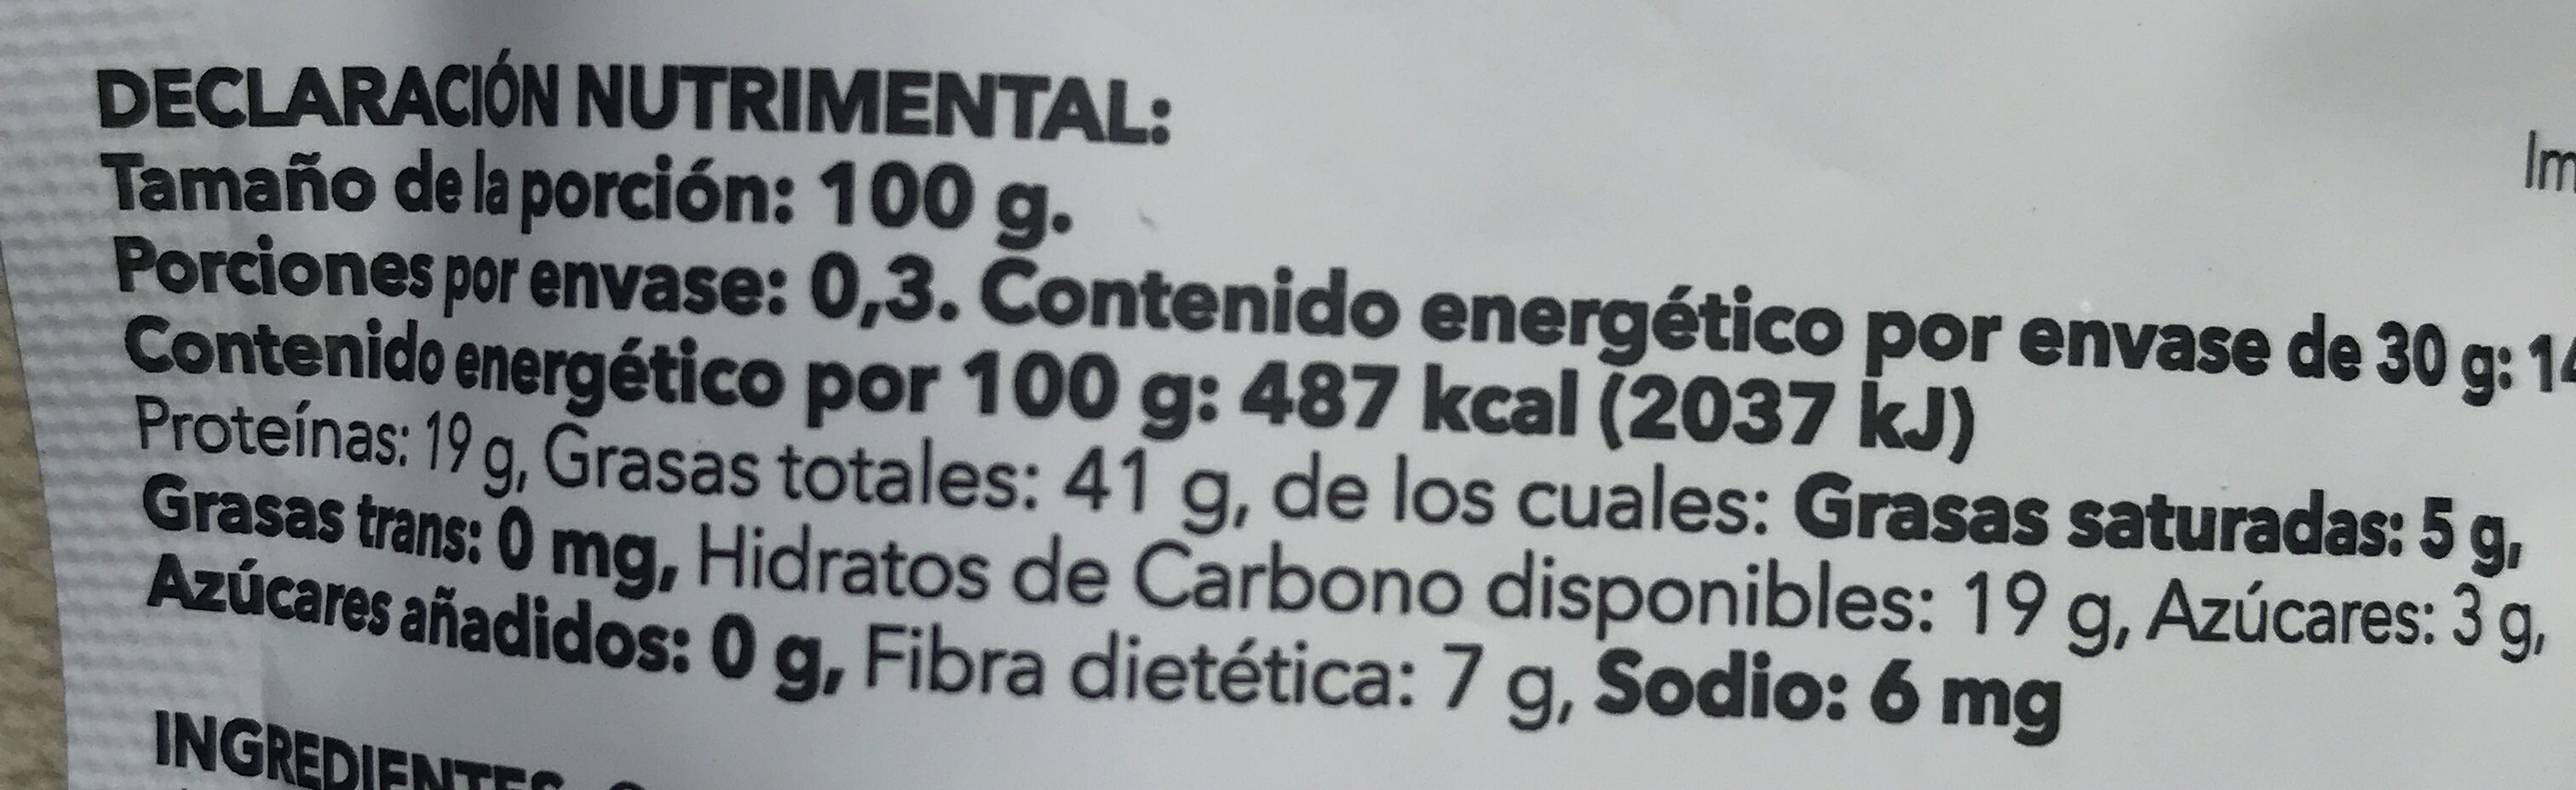 Cacahuate garapiñado sin azucar añadida - Nutrition facts - es